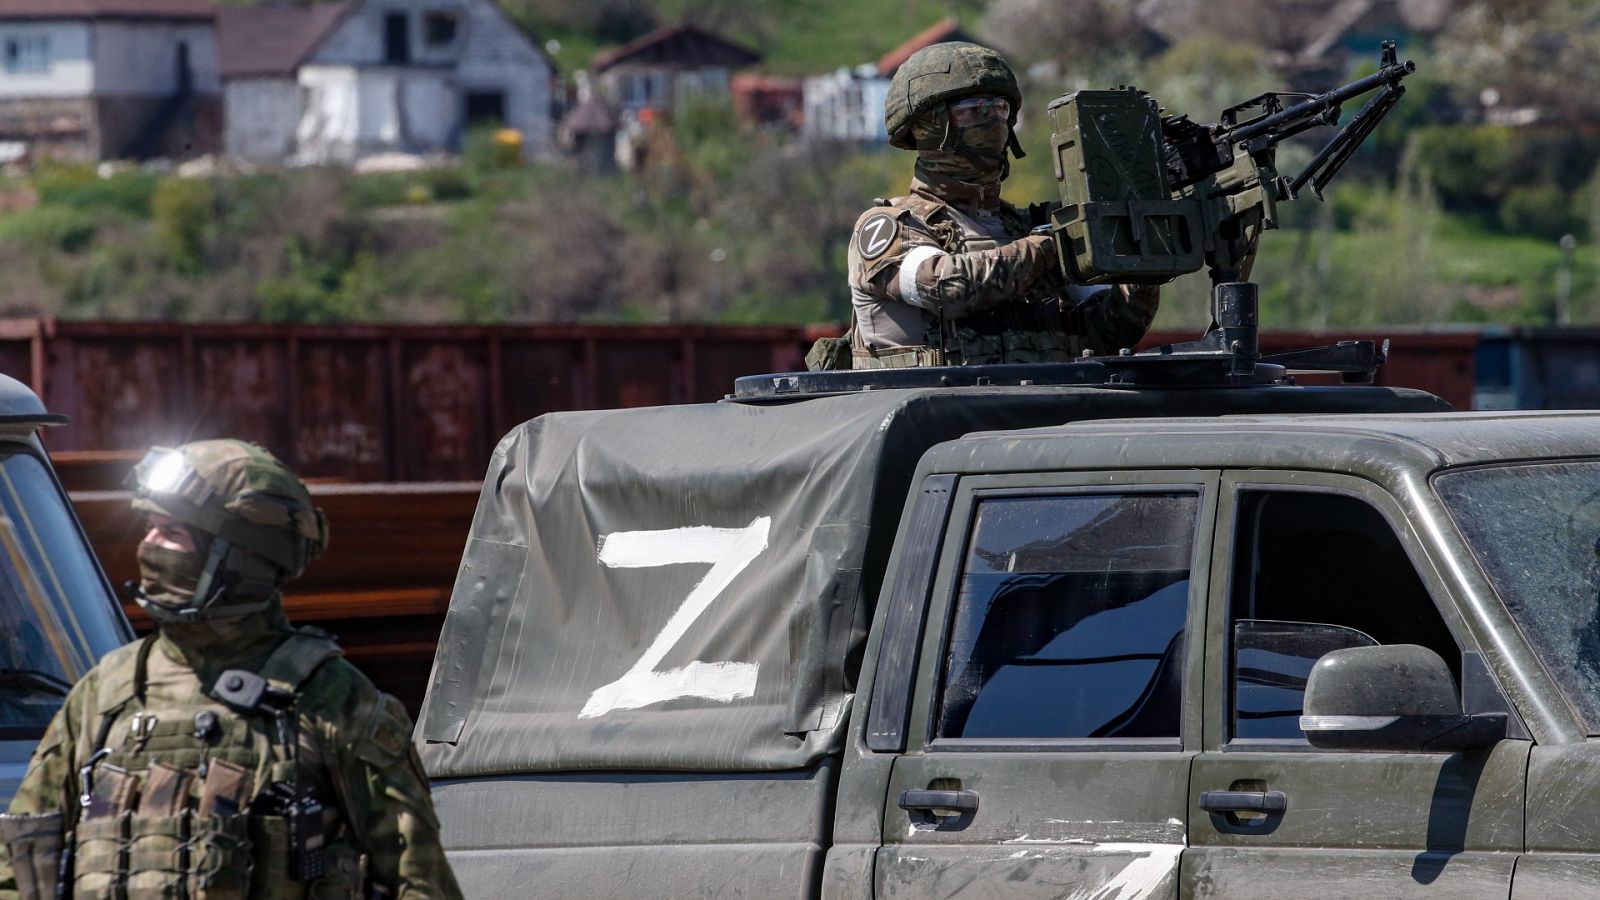 Rusia castiga a altos mandos militares por enviar reclutas a Ucrania